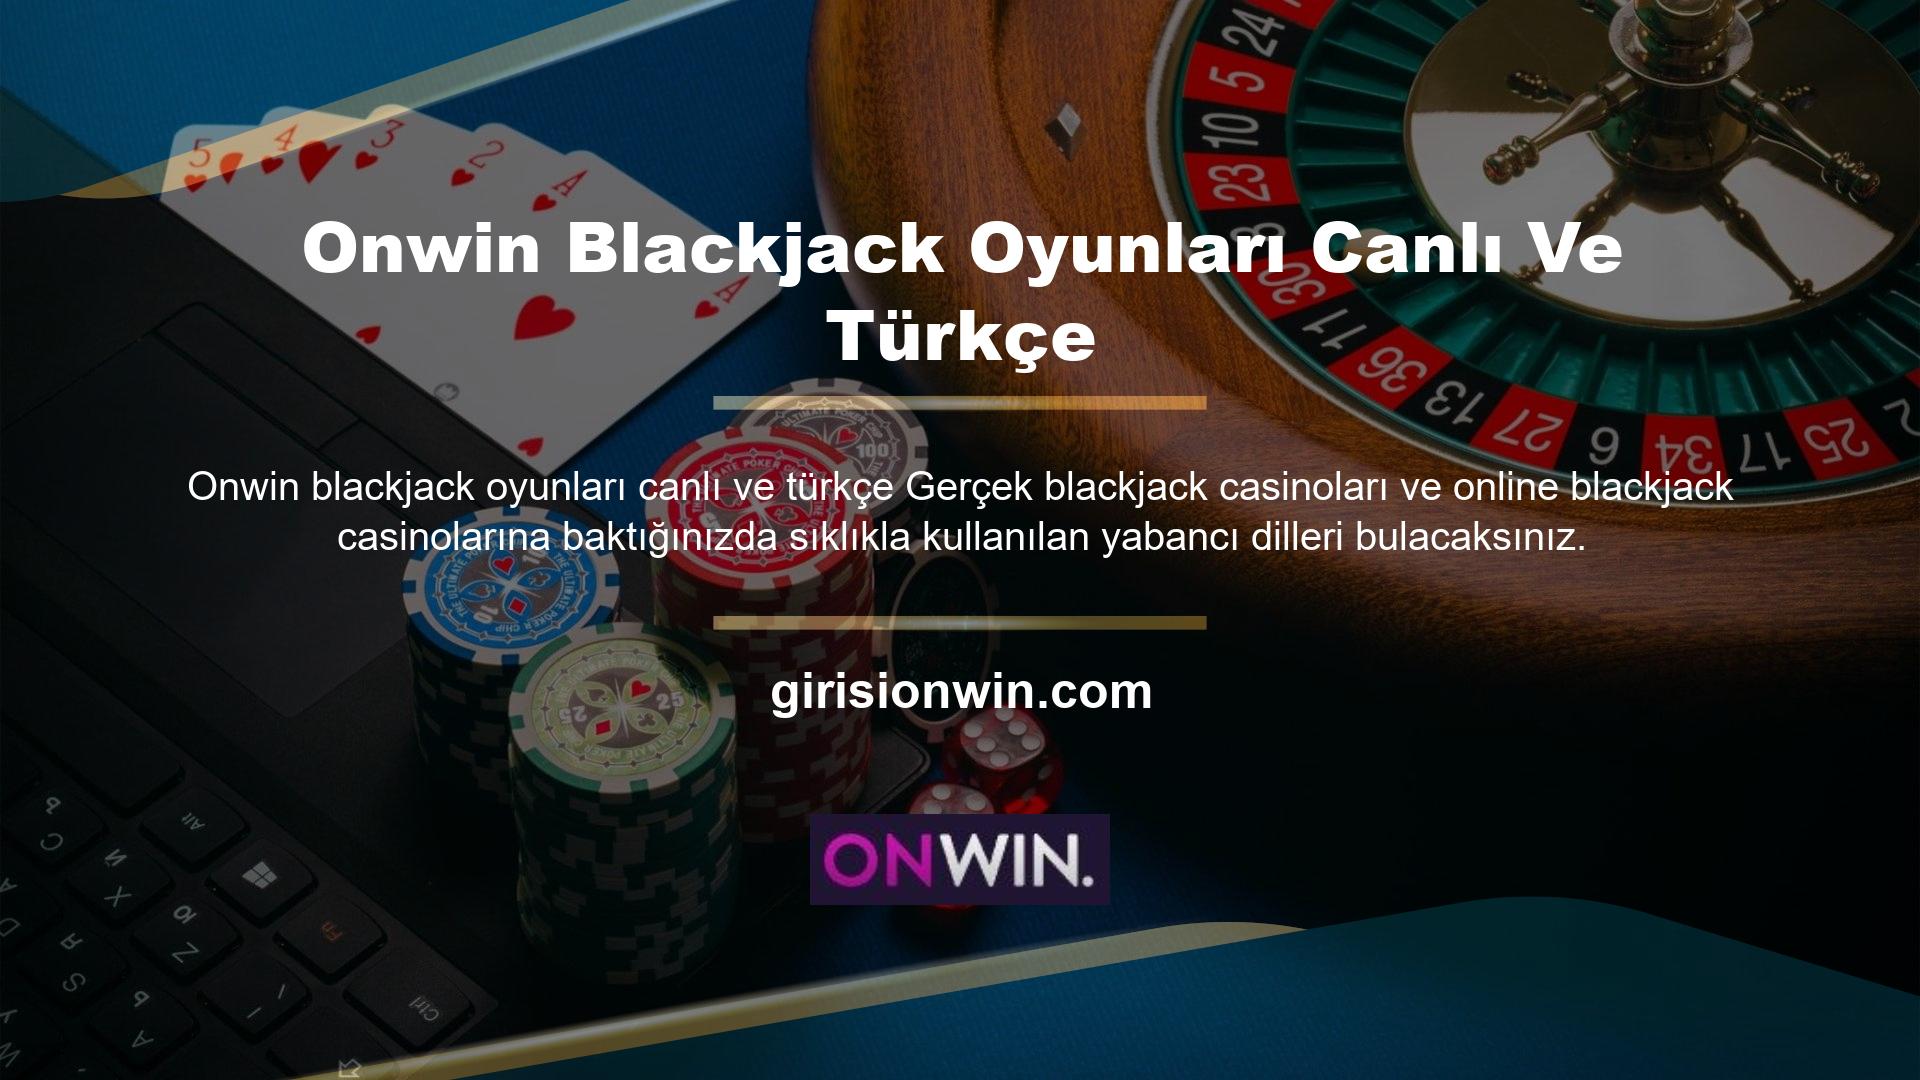 Onwin blackjack oyunları canlı ve türkçe